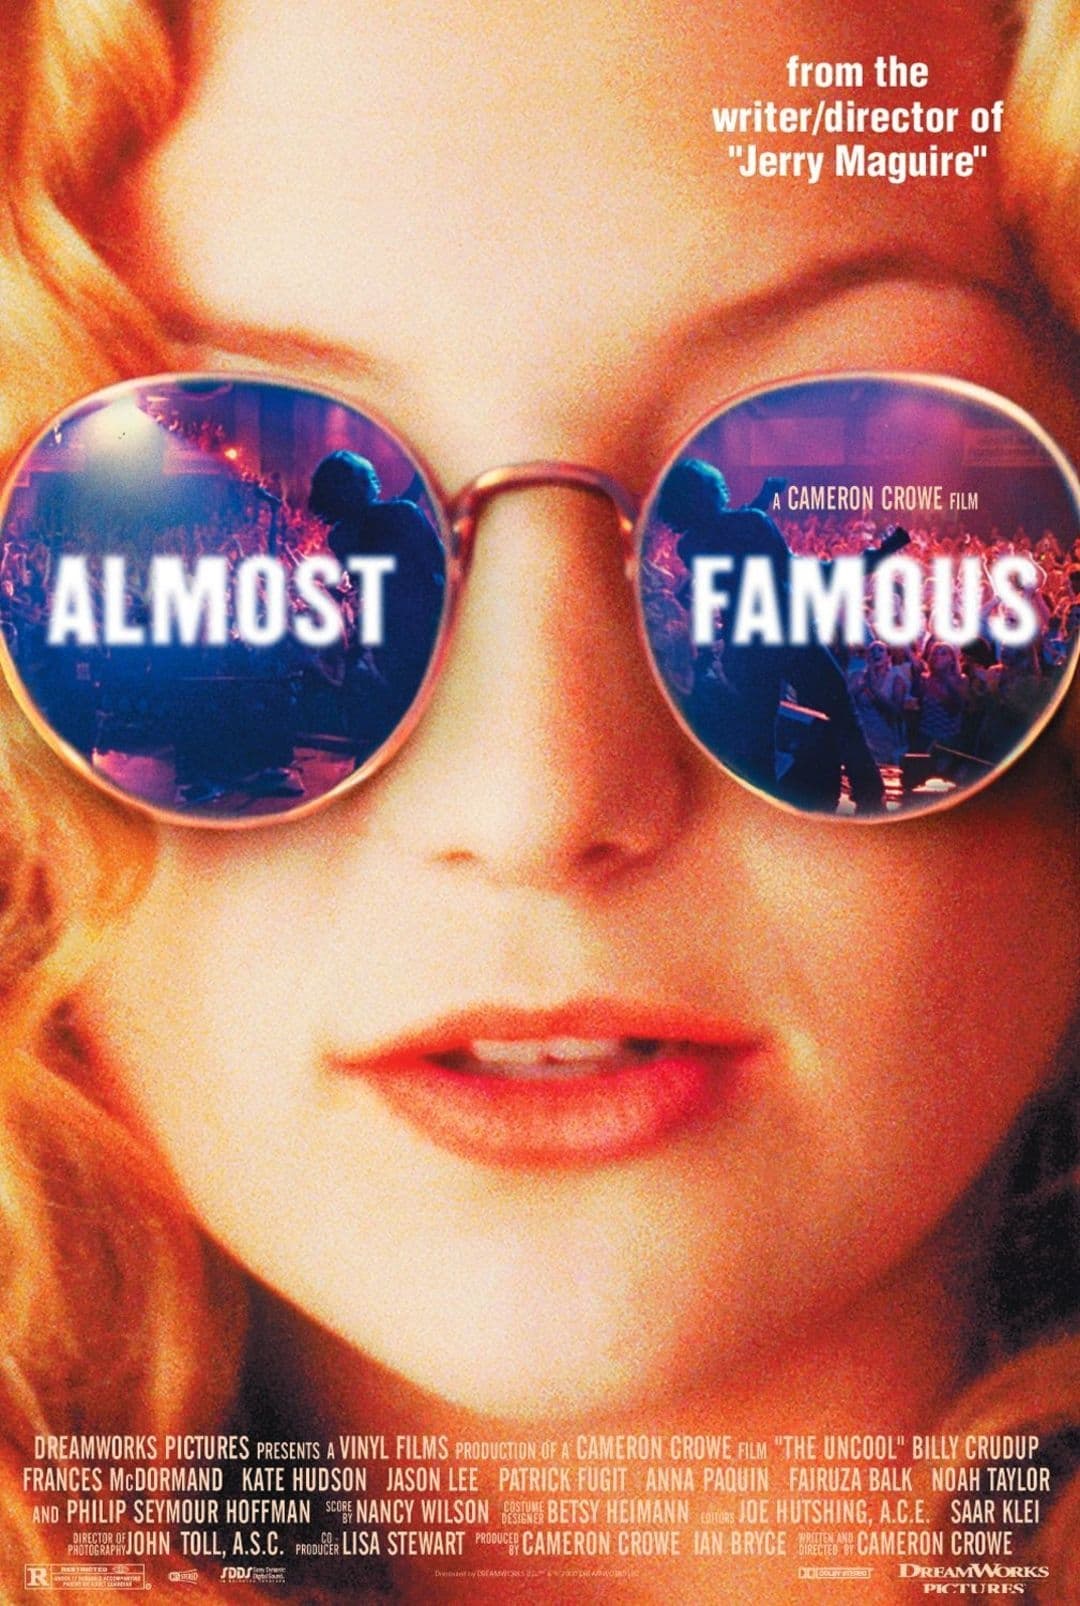 ดูหนังออนไลน์ฟรี Almost Famous 2000 อีกนิด…ก็ดังแล้ว